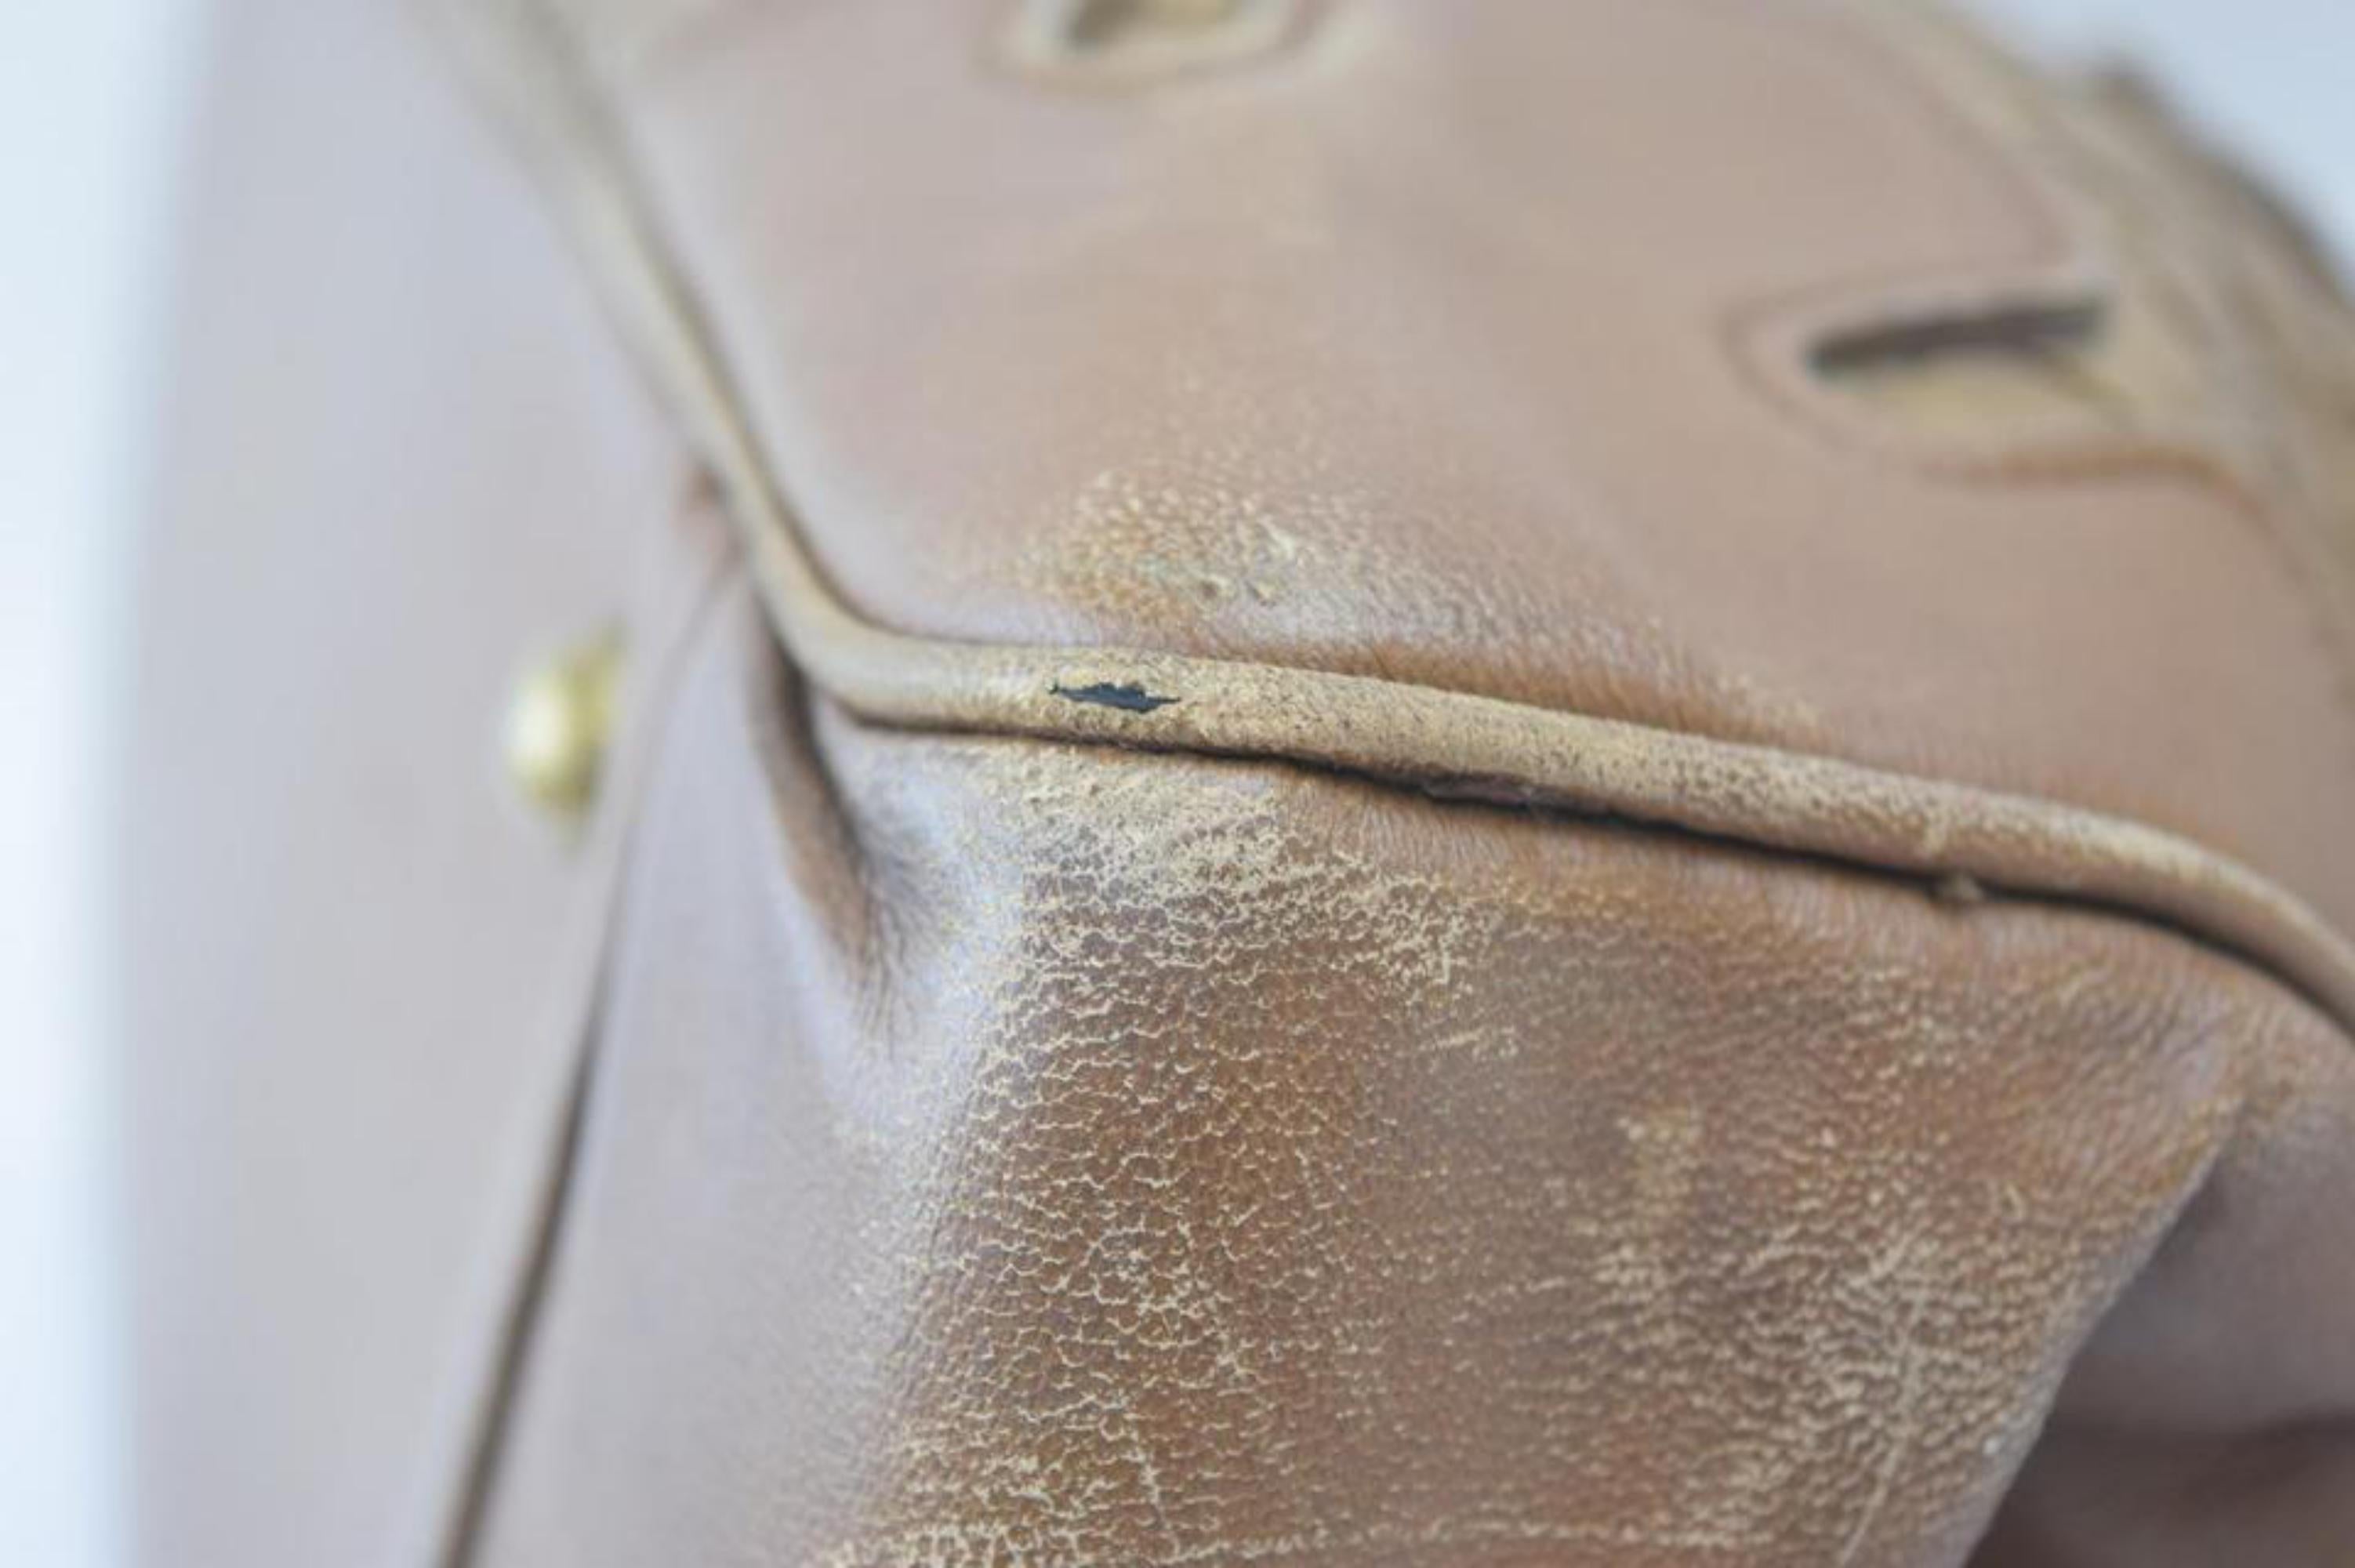 Bottega Veneta Intrecciato Woven Tote 865639 Brown Patent Leather Shoulder Bag For Sale 5